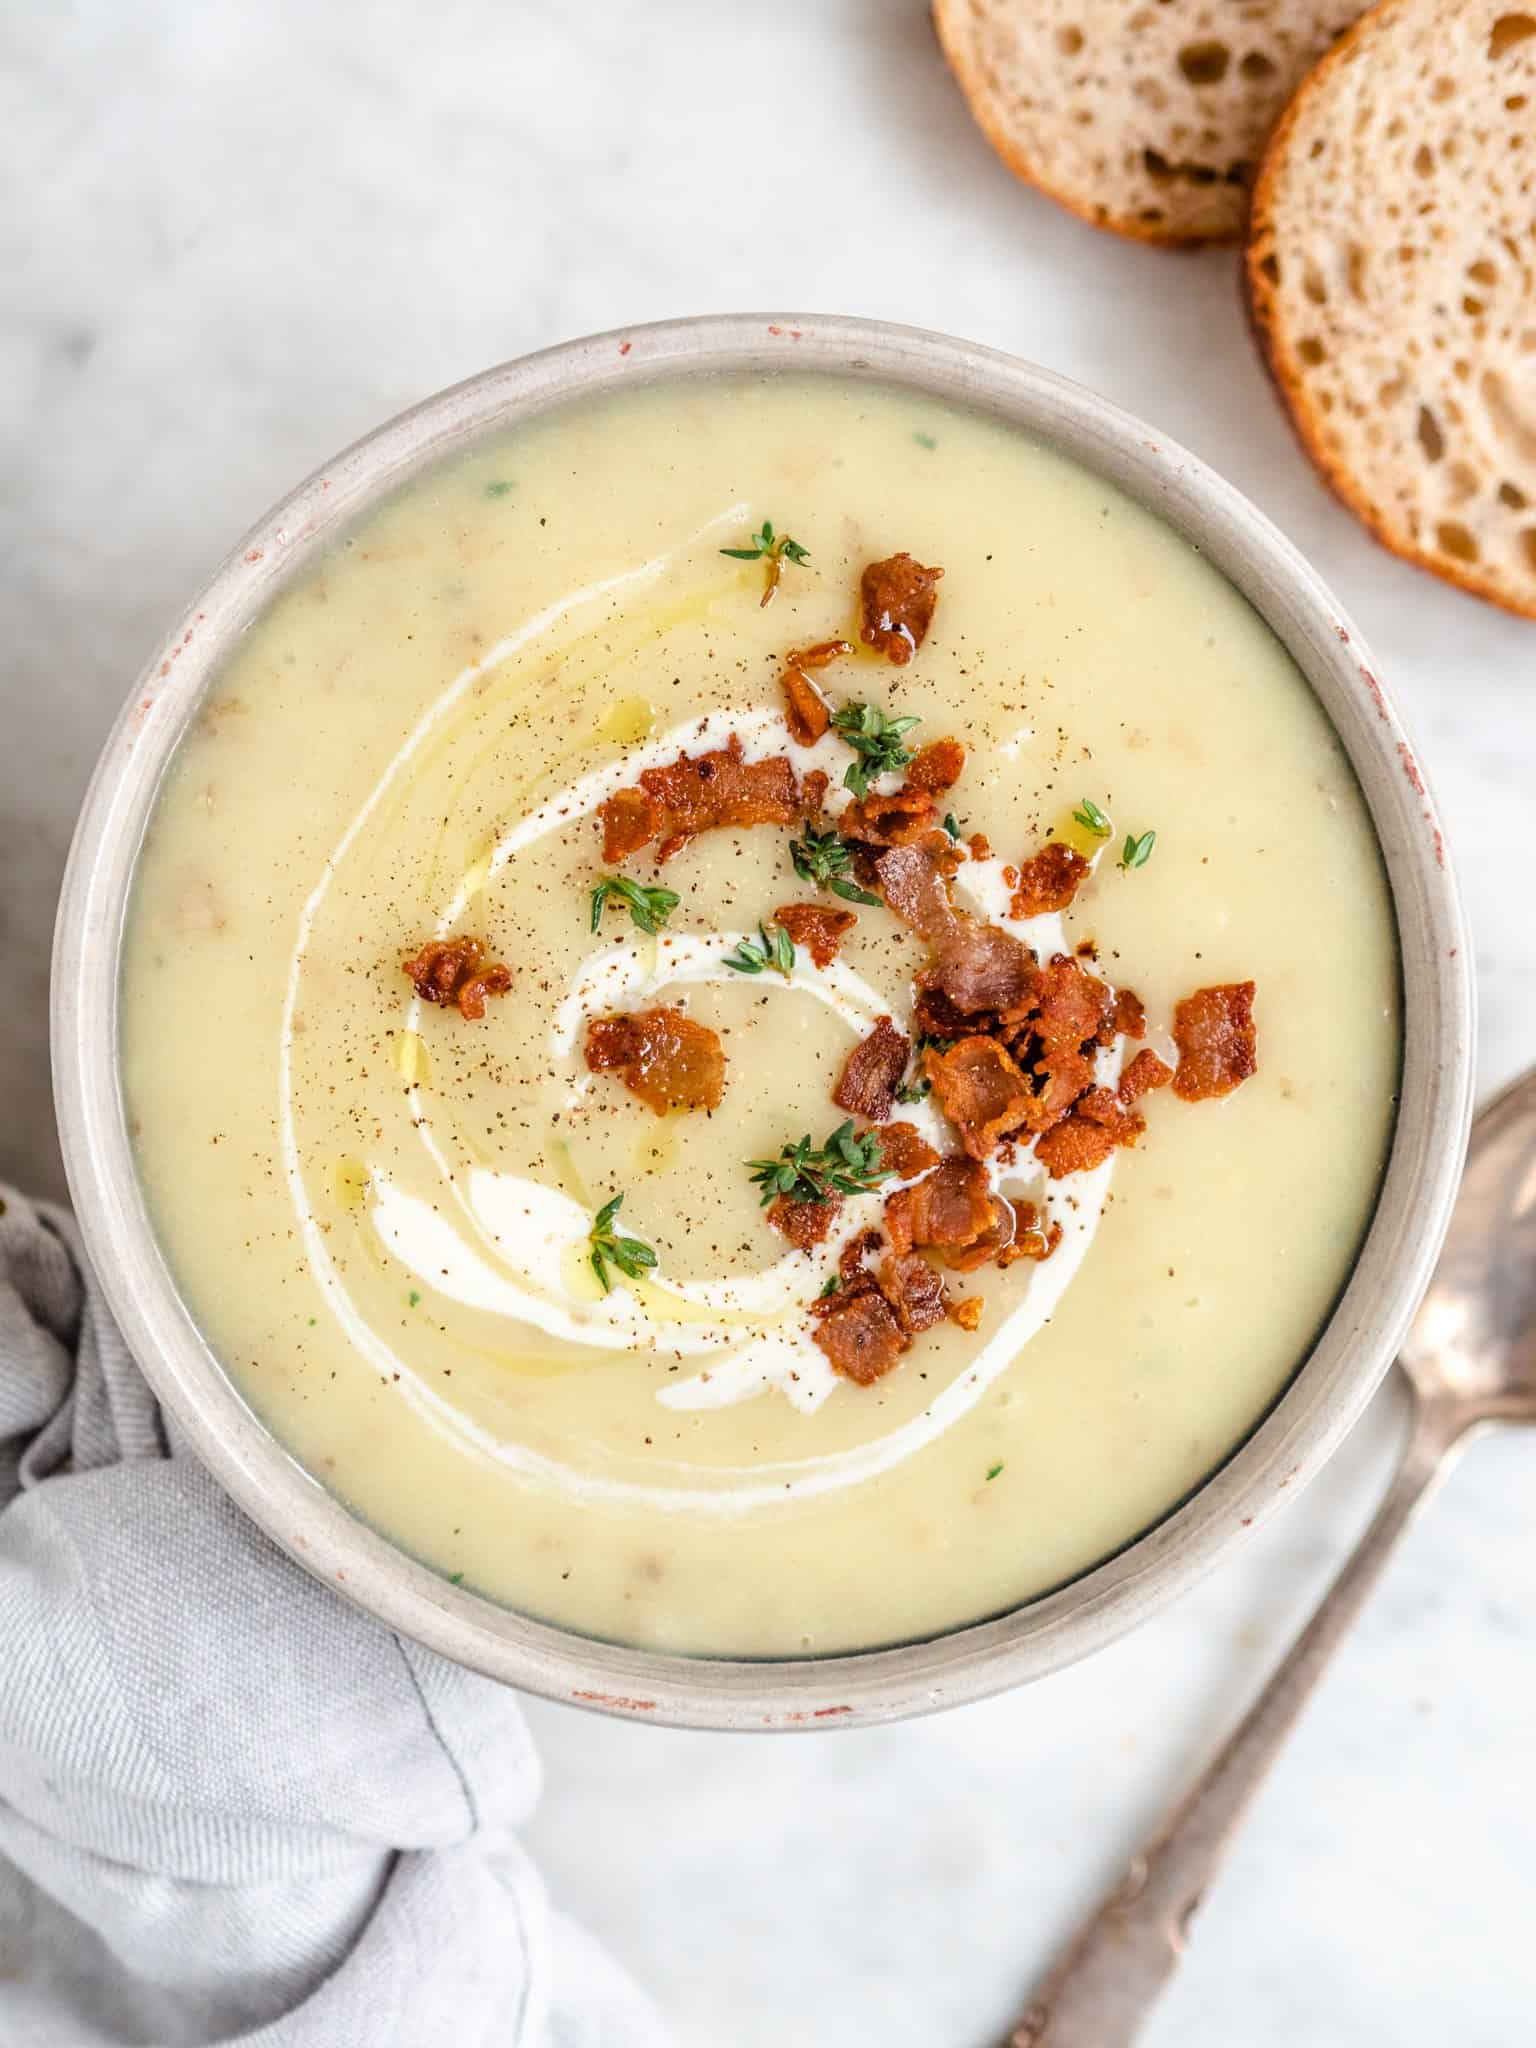 Fremsyn katolsk hår Kartoffelsuppe - opskrift på cremet suppe med kartofler